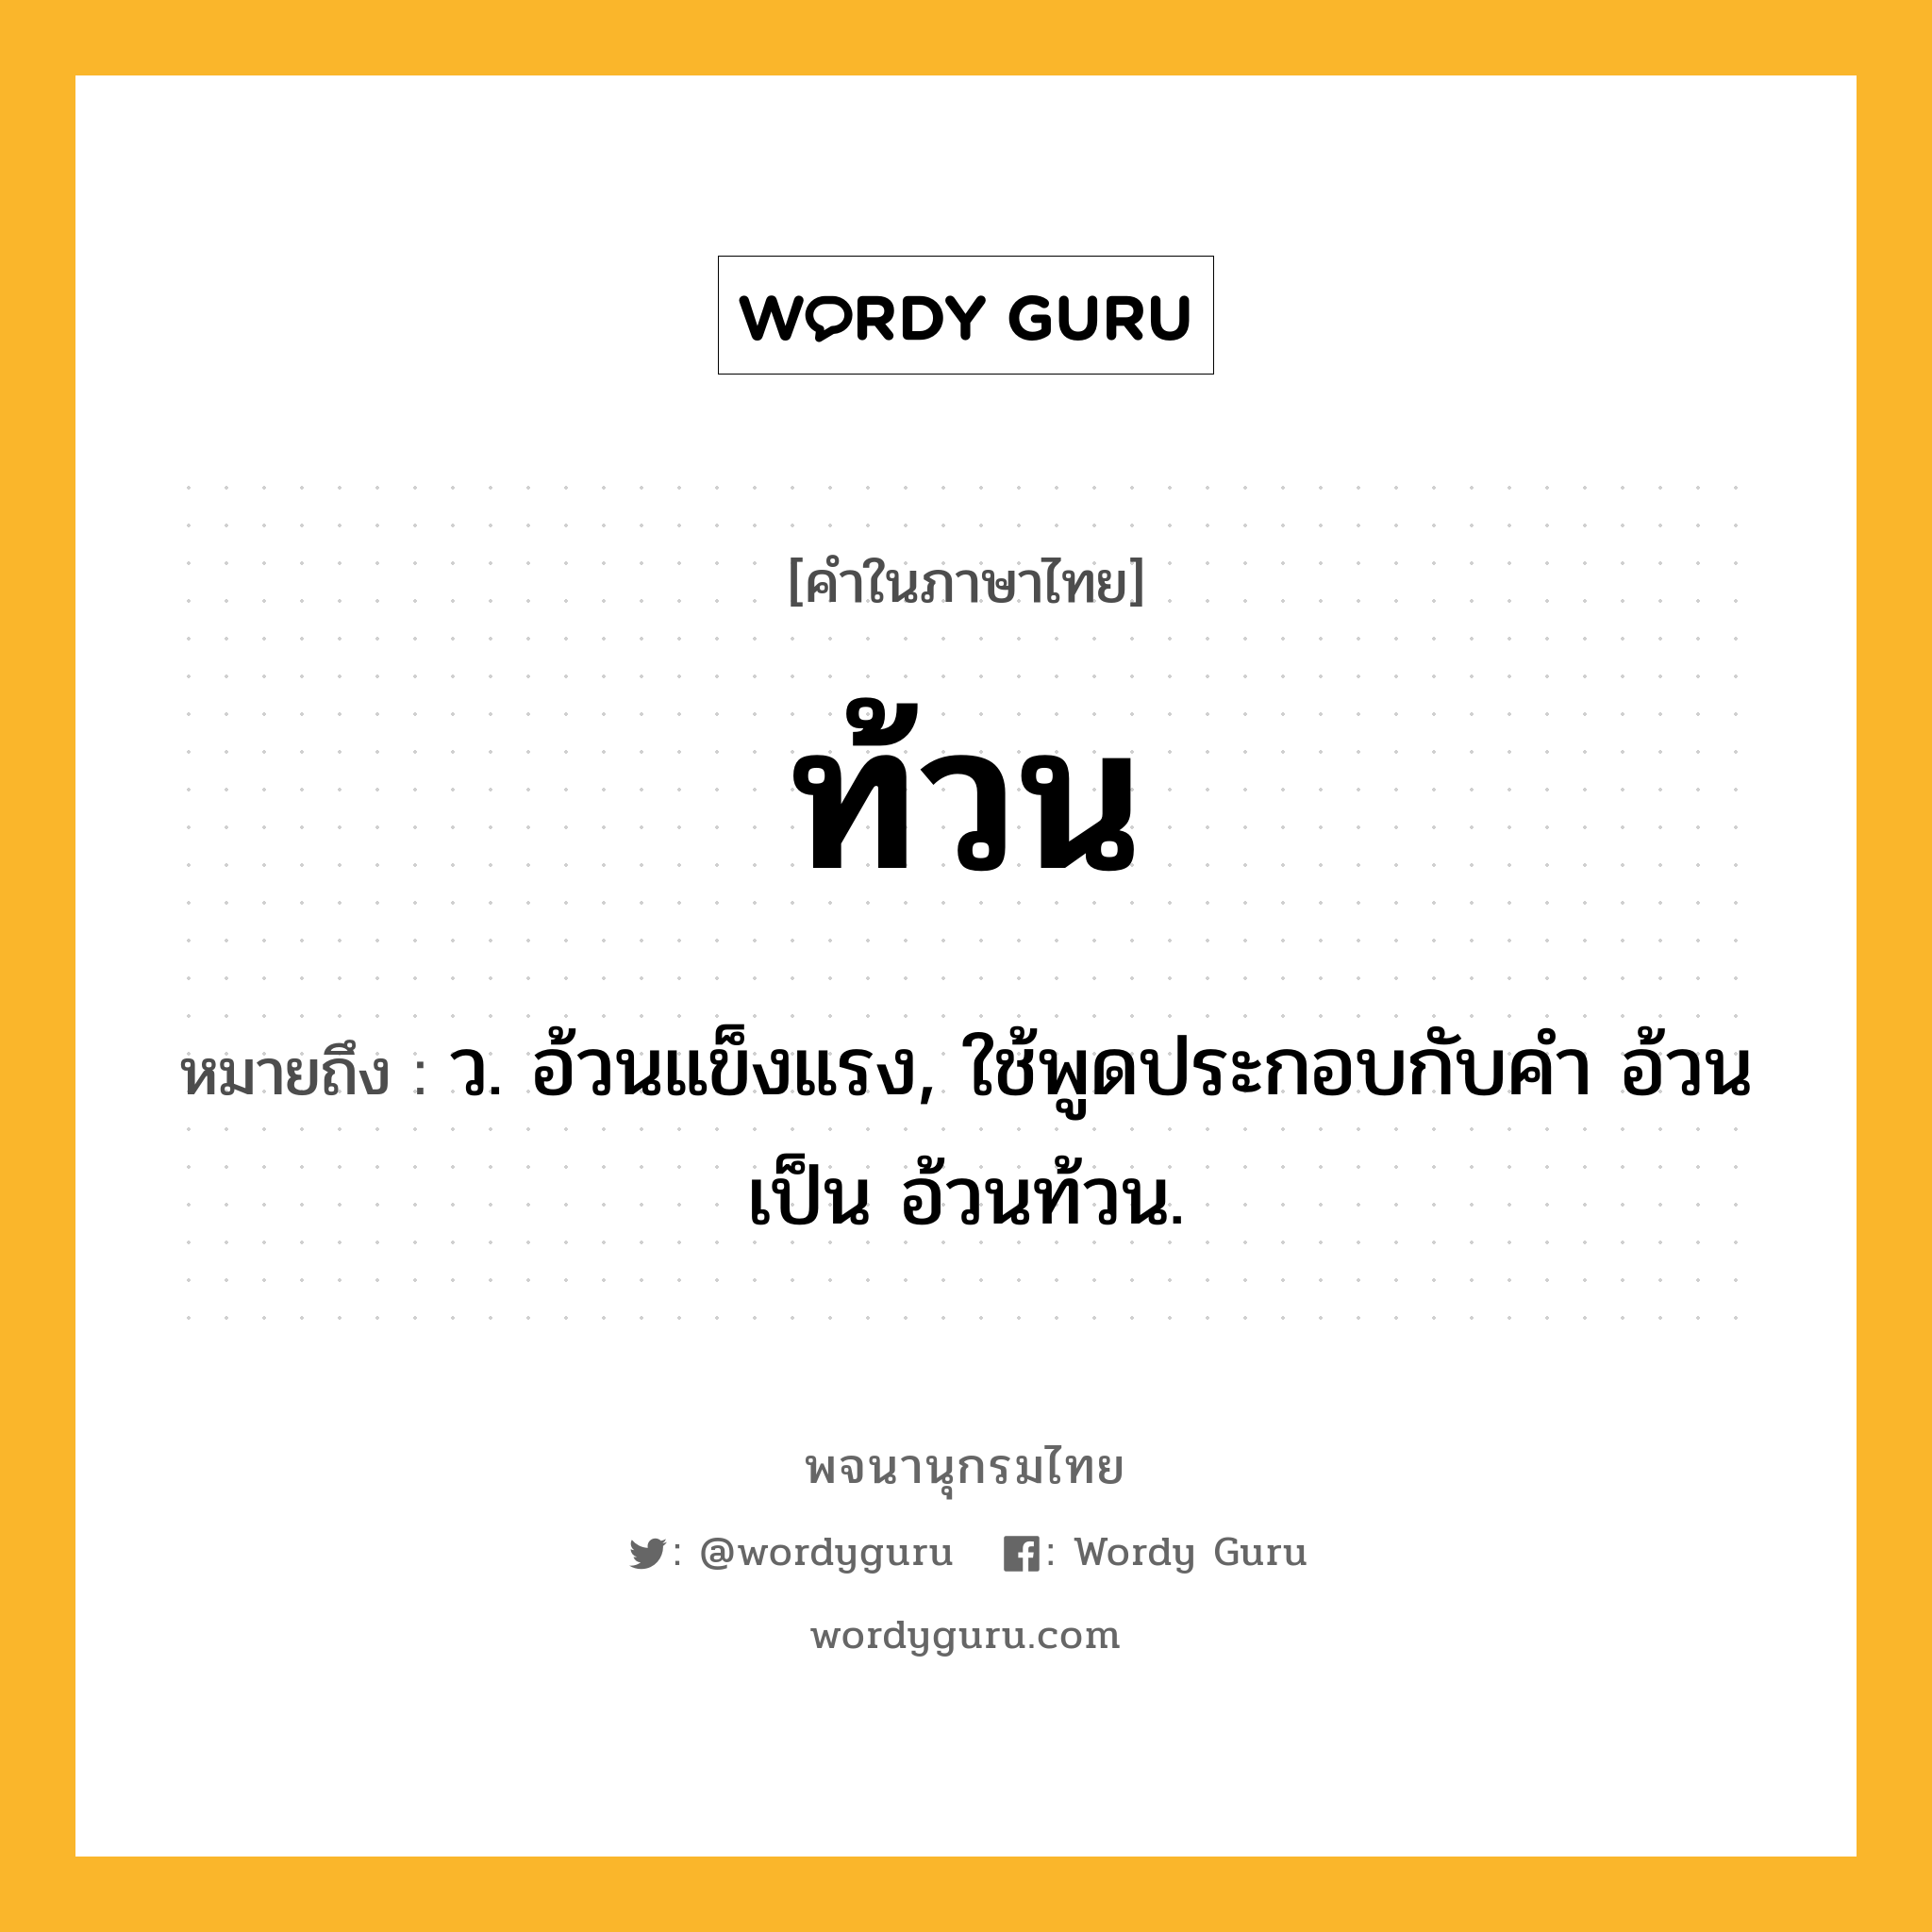 ท้วน ความหมาย หมายถึงอะไร?, คำในภาษาไทย ท้วน หมายถึง ว. อ้วนแข็งแรง, ใช้พูดประกอบกับคํา อ้วน เป็น อ้วนท้วน.